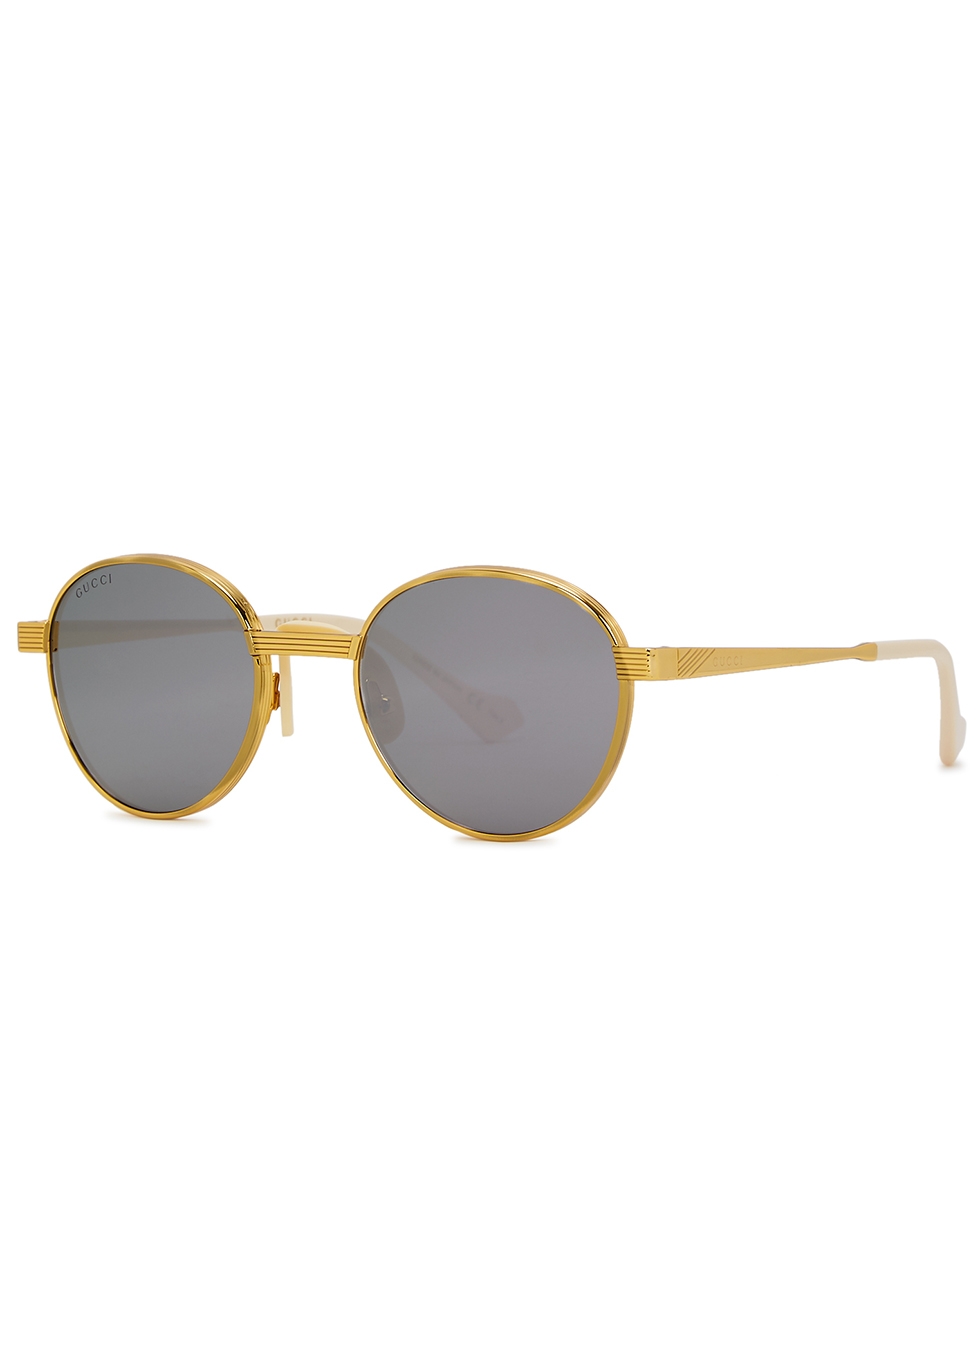 gucci gold sunglasses